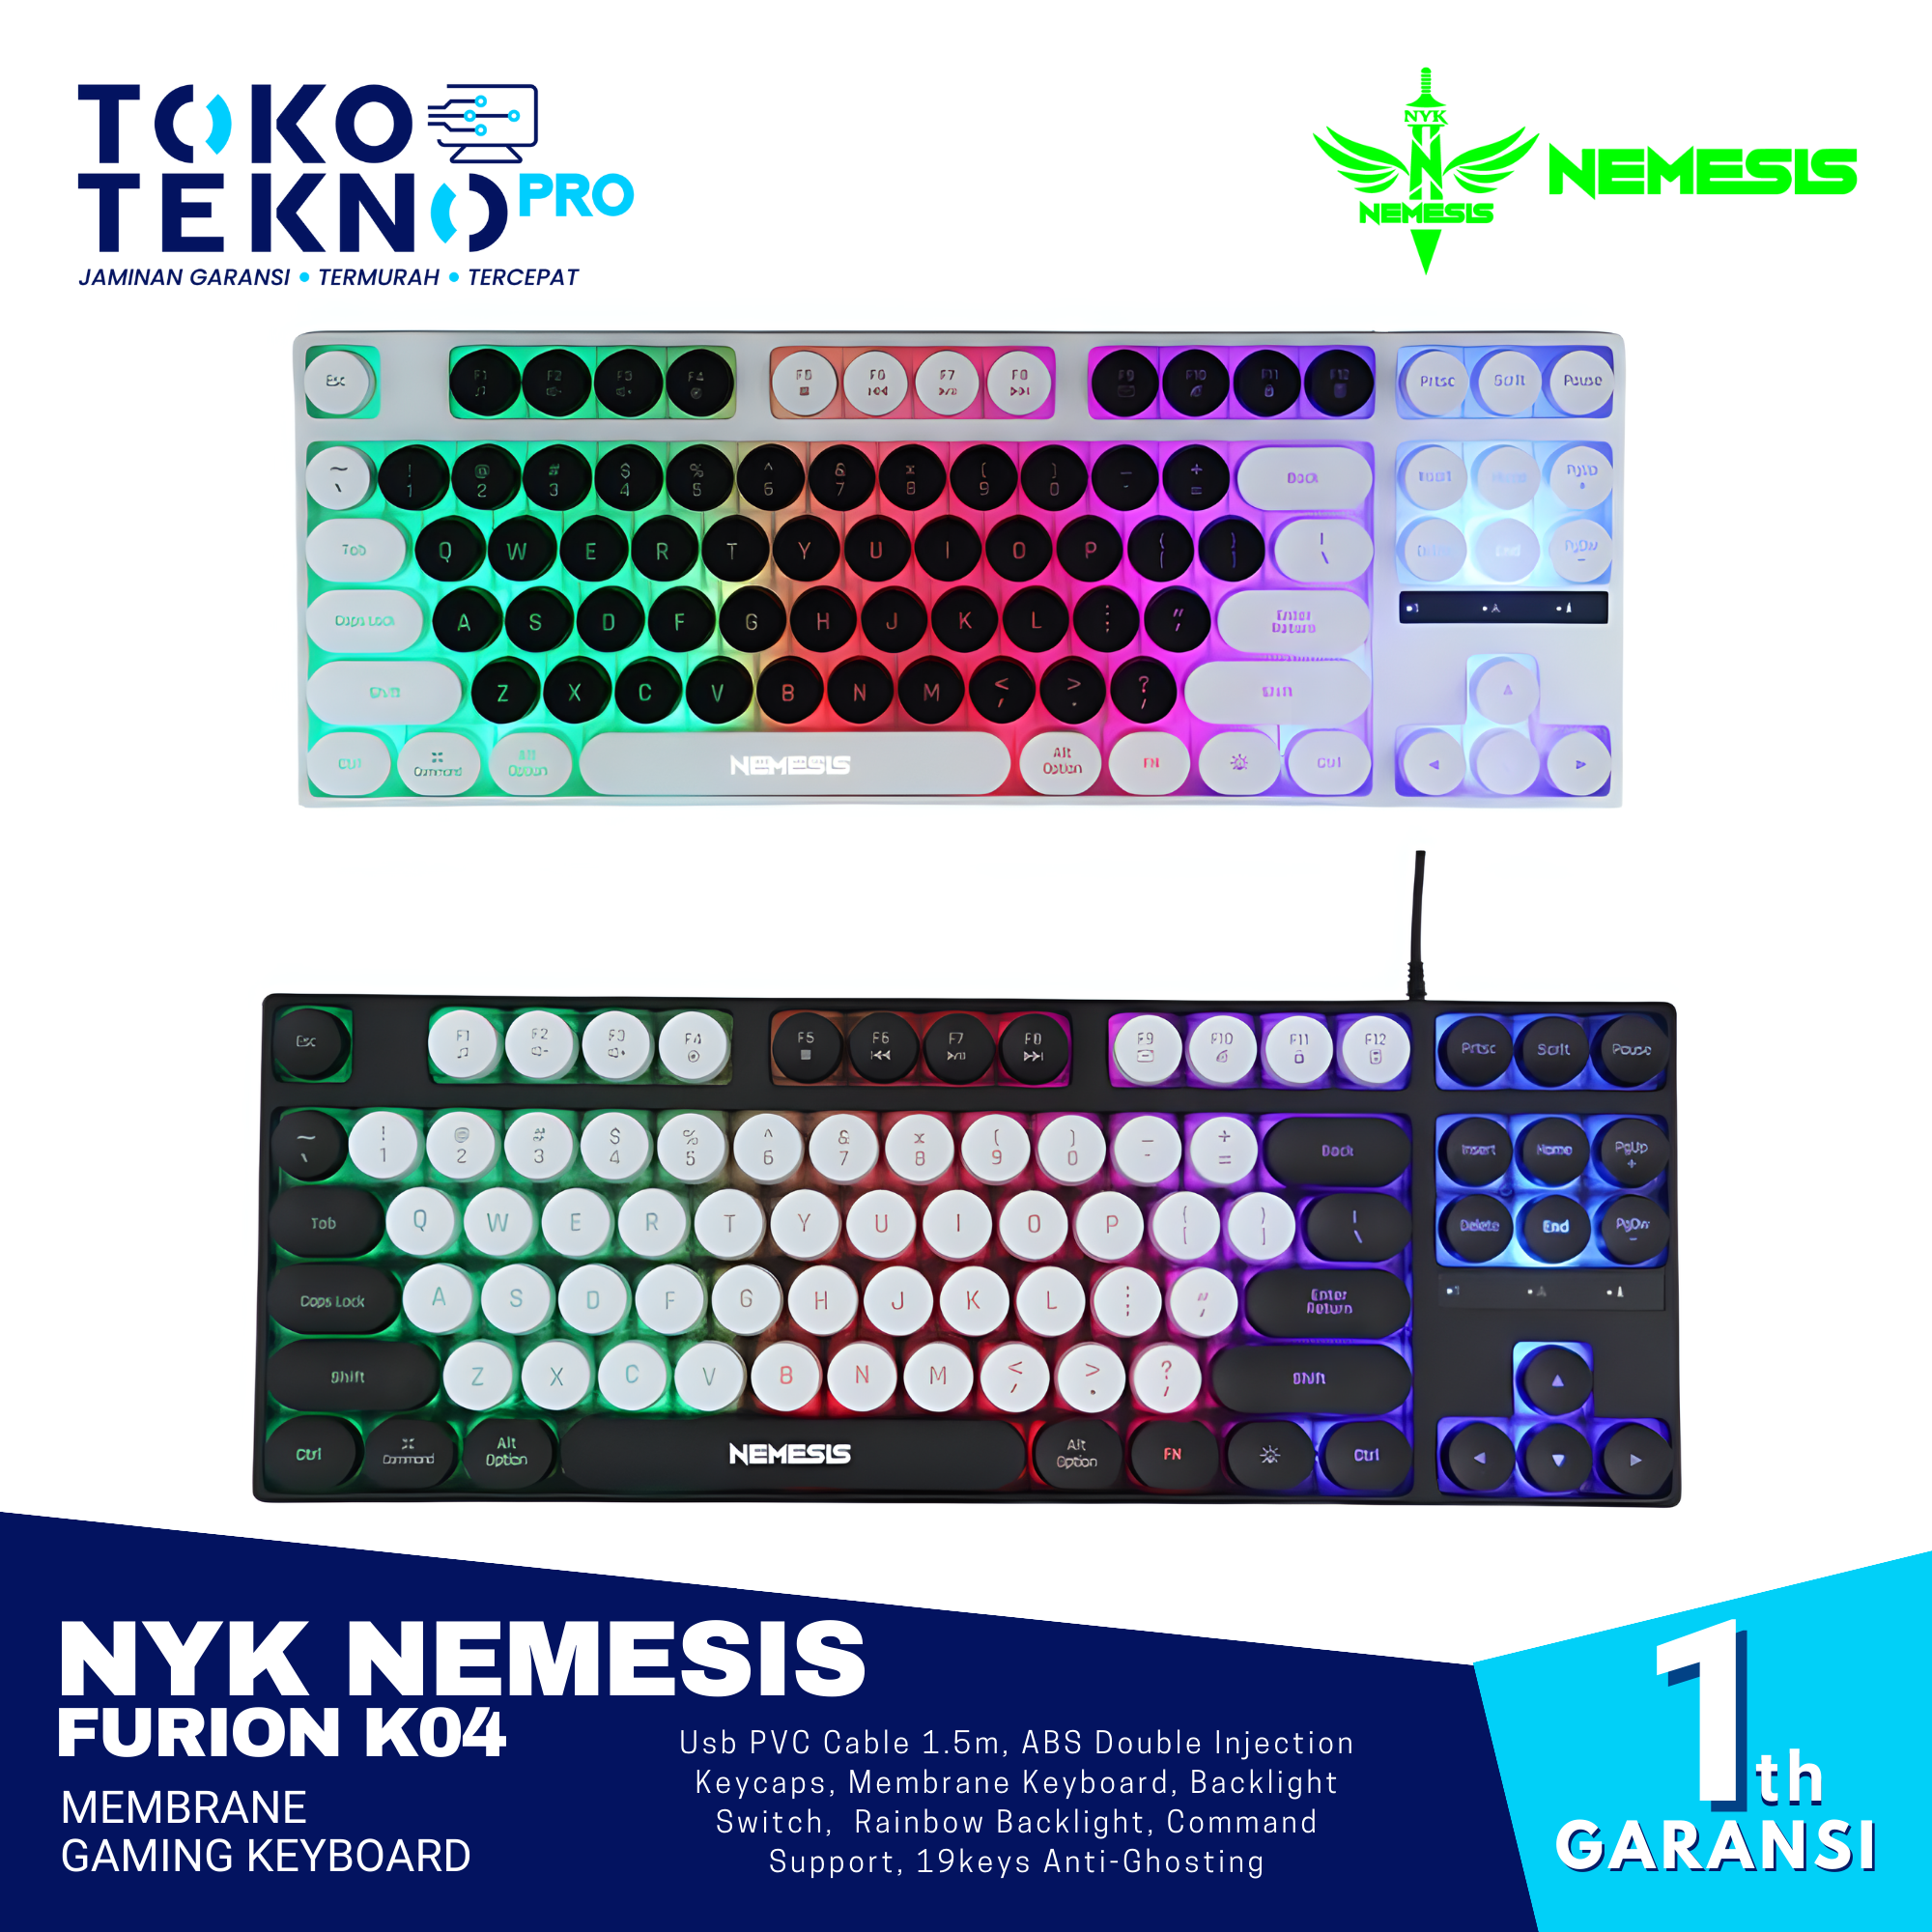 NYK Nemesis Furion K04 Membrane Gaming Keyboard